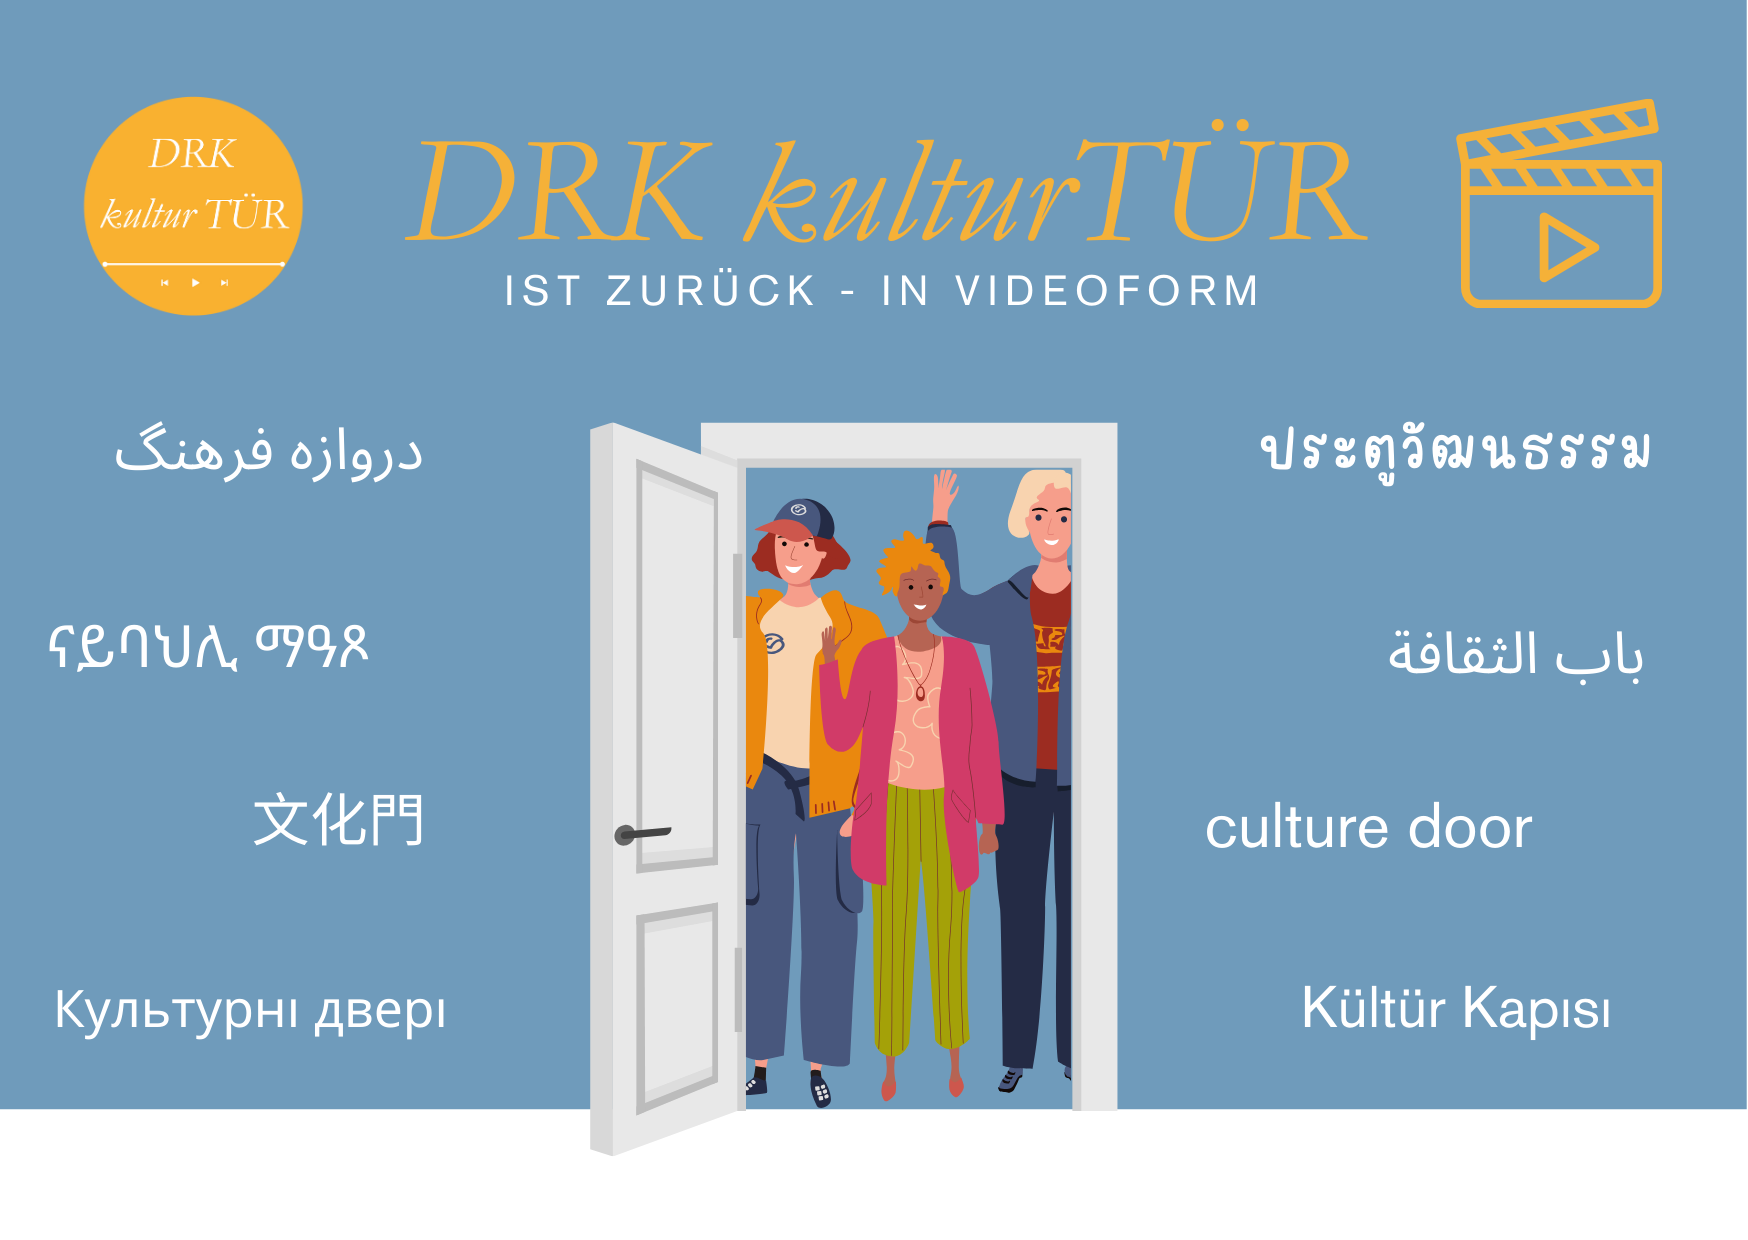 Willkommen bei der DRK kulturTür 2.0: Ein Tor zu Vielfalt, Dialog und Verbindung!